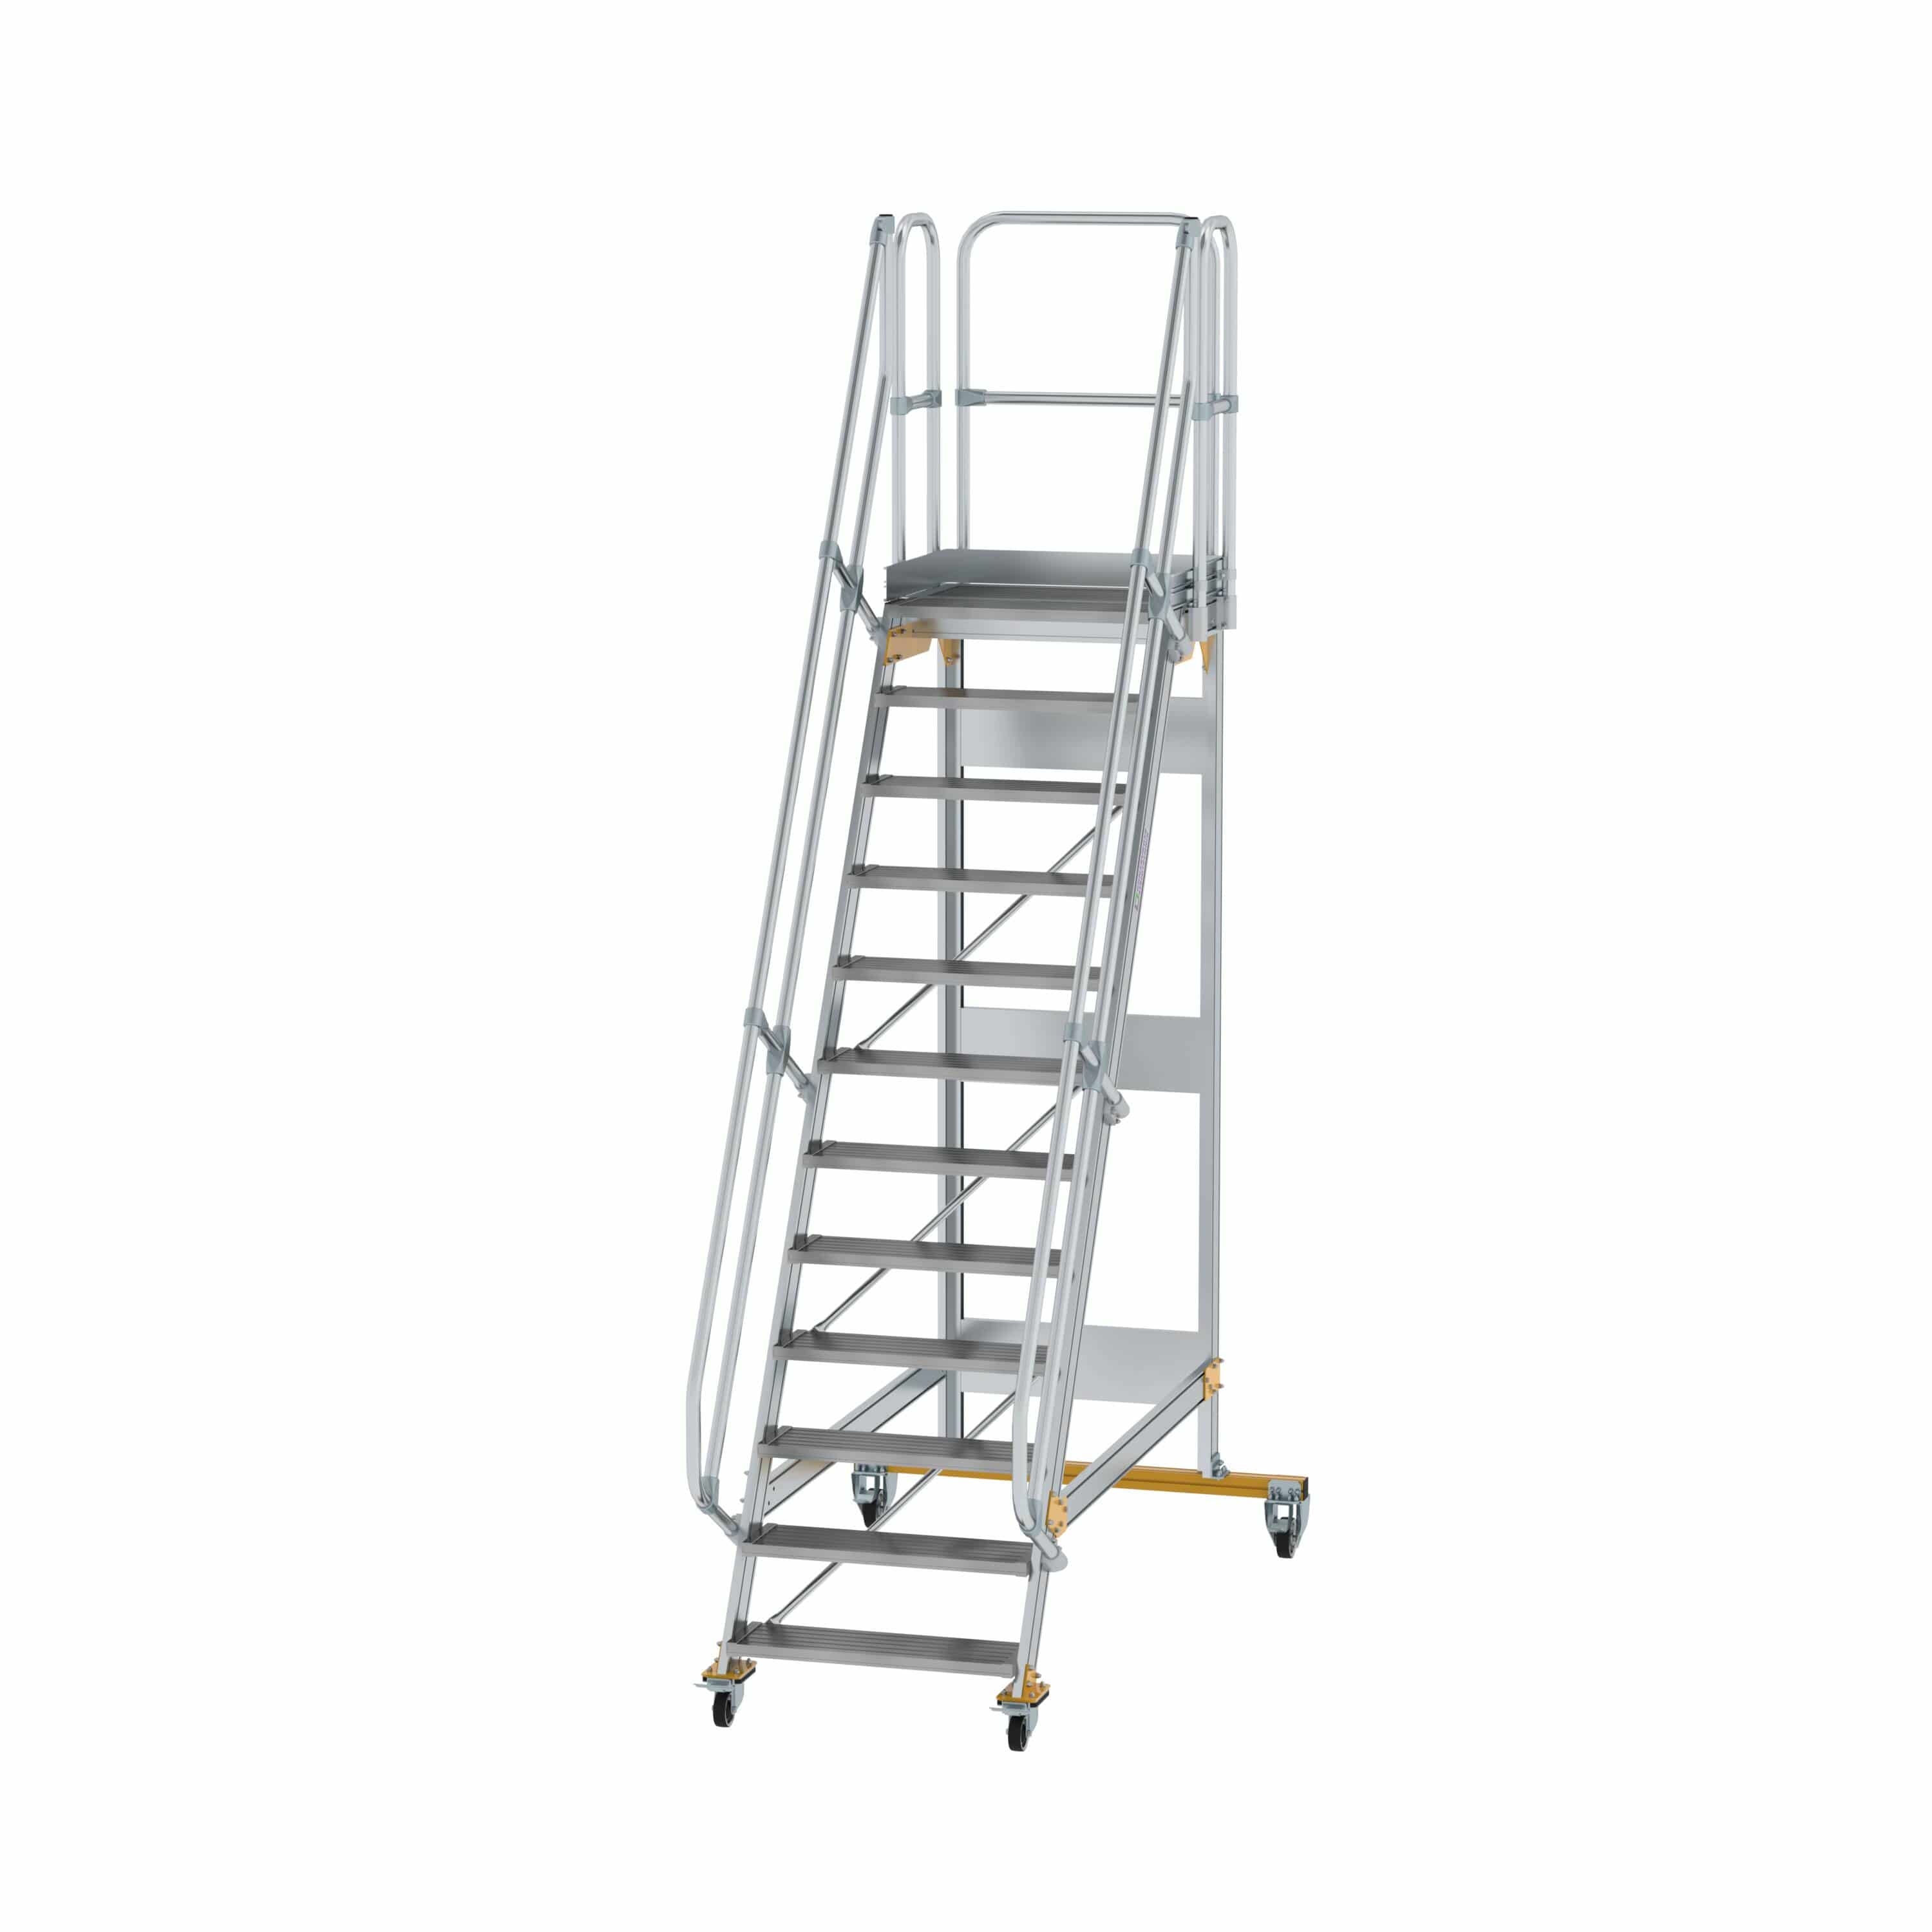 Munk Plattformtreppe fahrbar 60° Stufenbreite 800 mm 12 Stufen